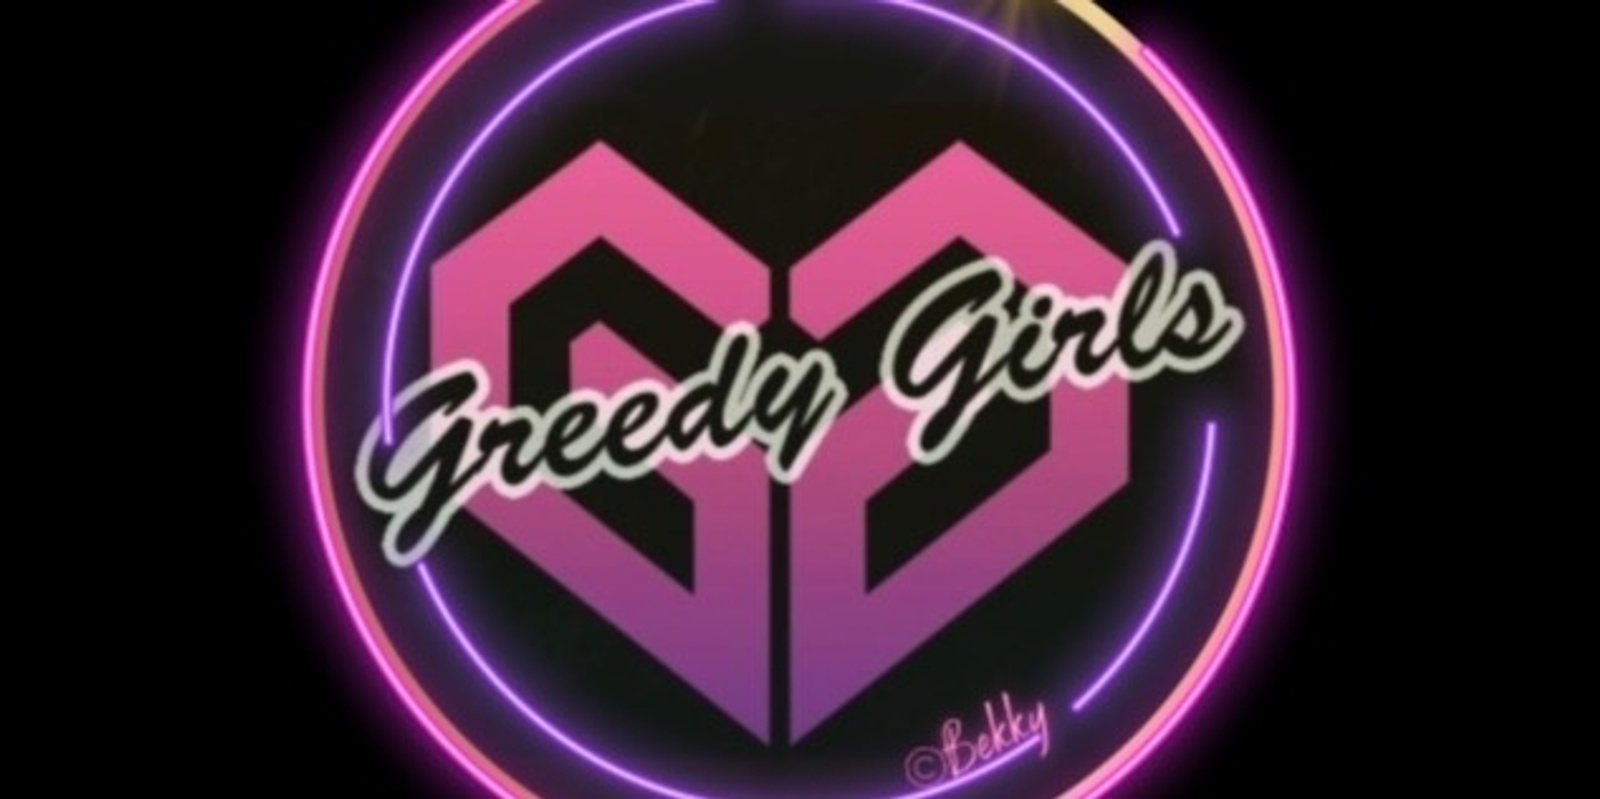 Banner image for Greedy Girls Daytime Social Invite